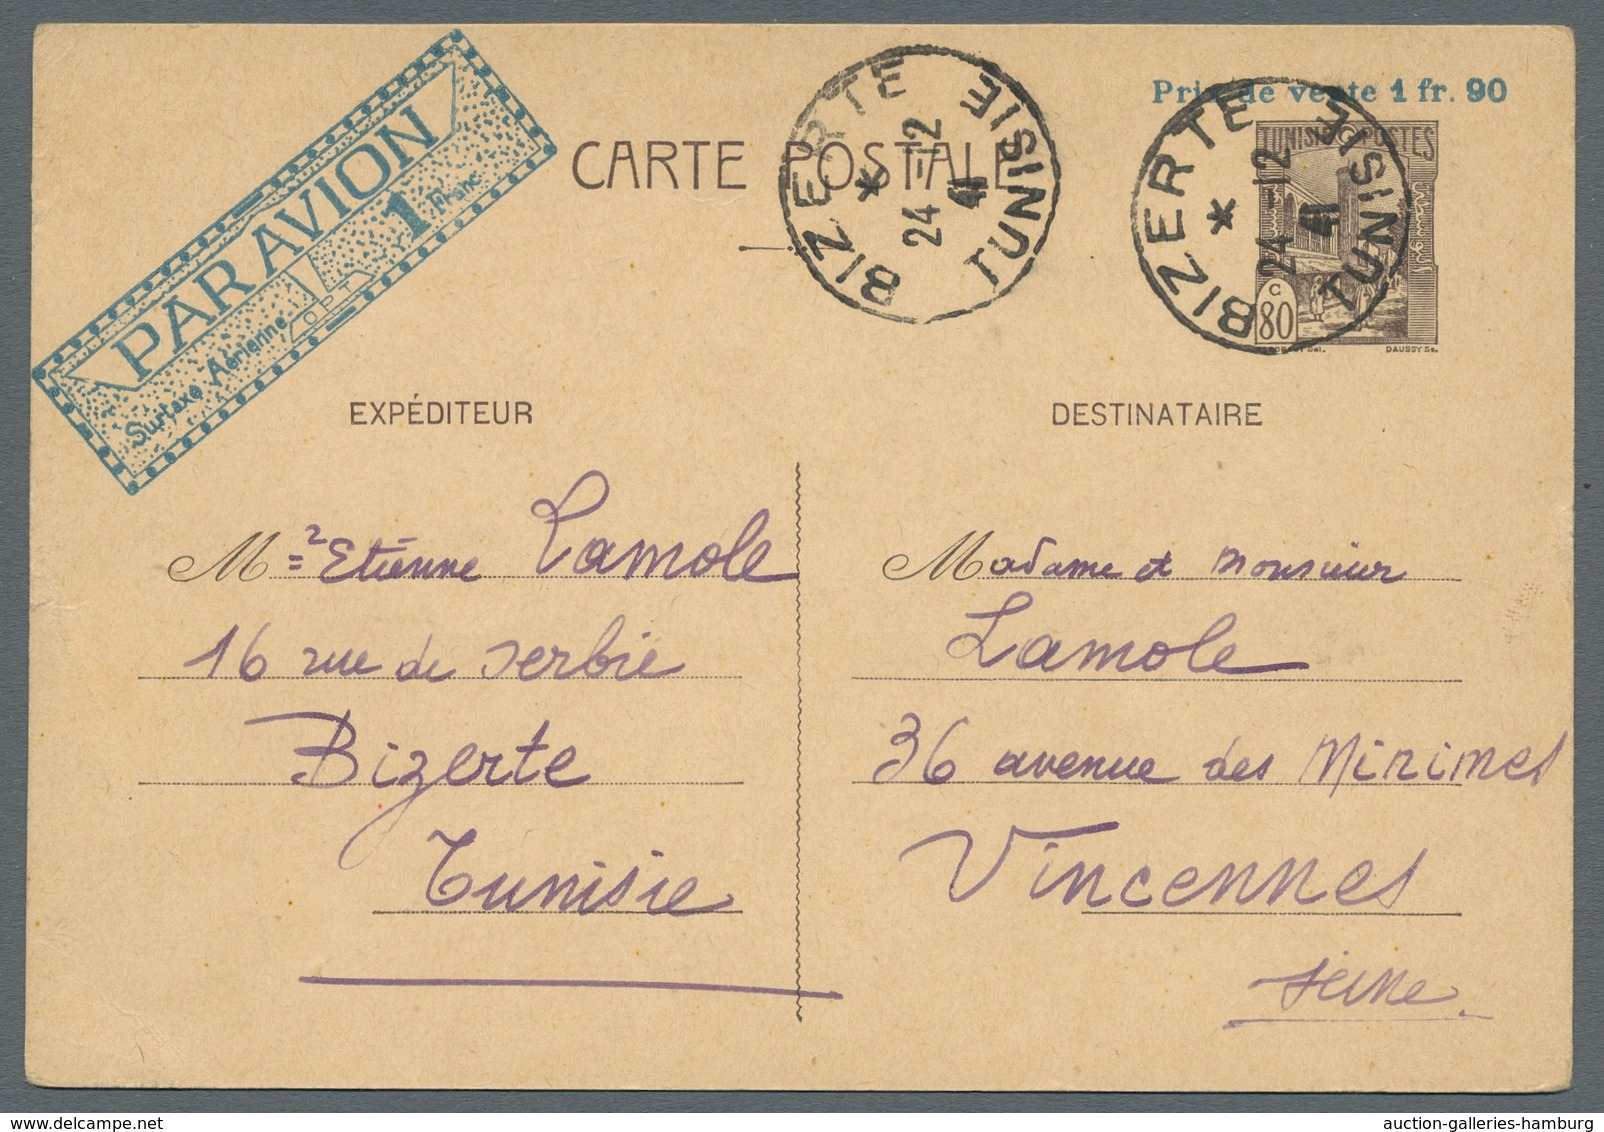 Tunesien - Ganzsachen: 1941-1942, Partie von 5 verschiedenen bedarfsgebrauchten Luftpost-Ganzsachenk